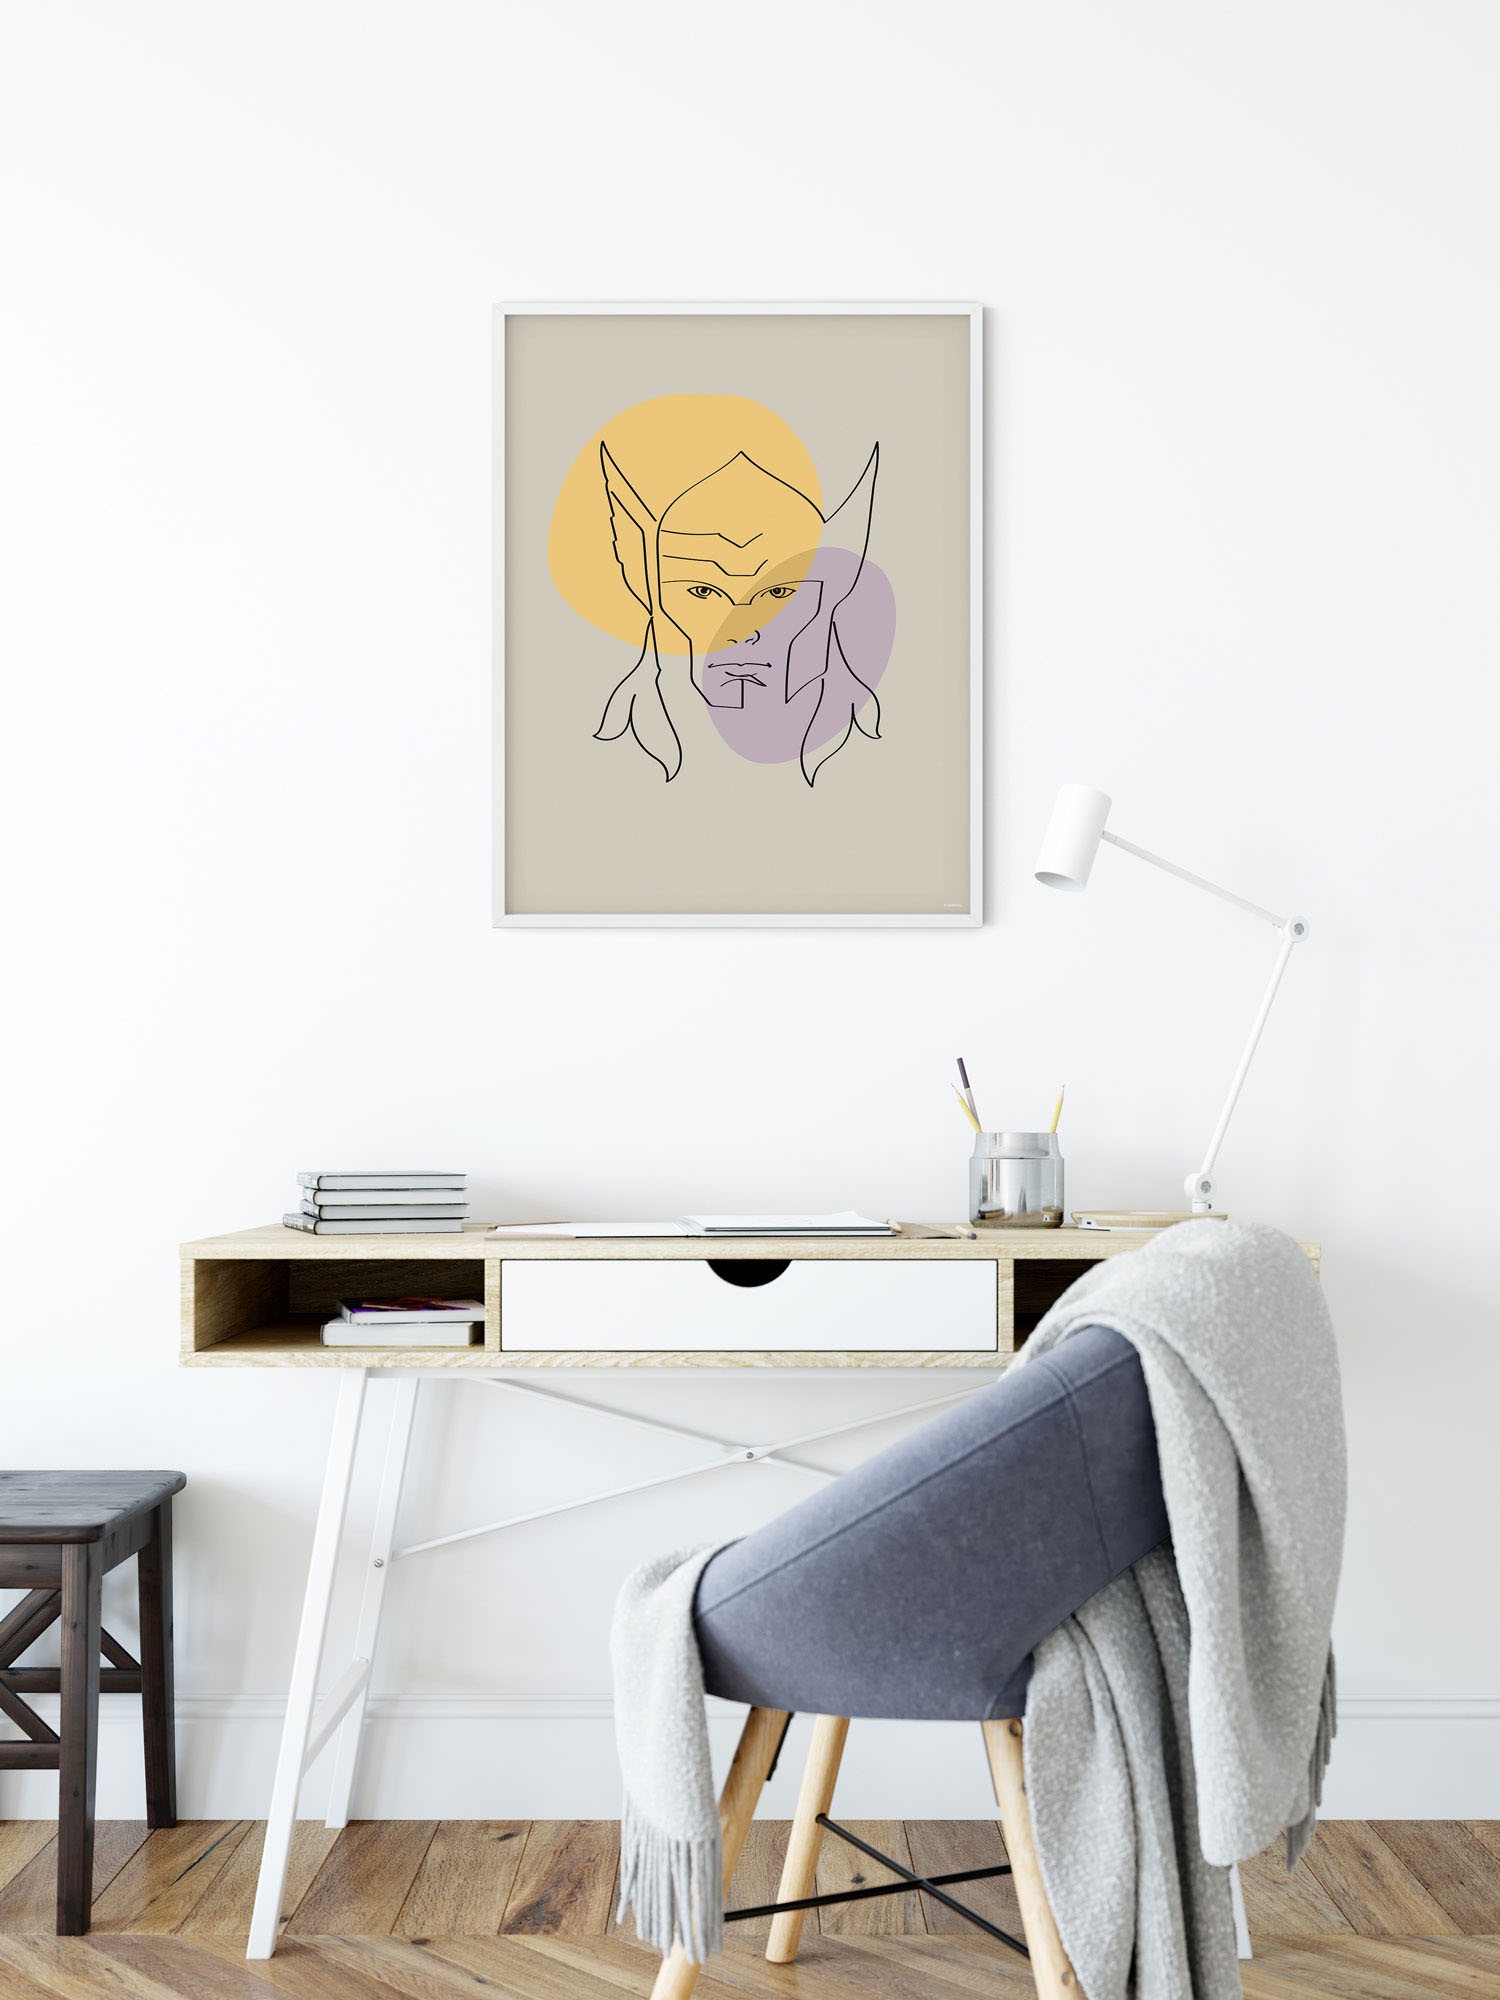 Komar Wandbild »Soulful Sanctuary Thor Head«, (1 St.), Deutsches Premium-Poster Fotopapier mit seidenmatter Oberfläche und hoher Lichtbeständigkeit. Für fotorealistische Drucke mit gestochen scharfen Details und hervorragender Farbbrillanz.